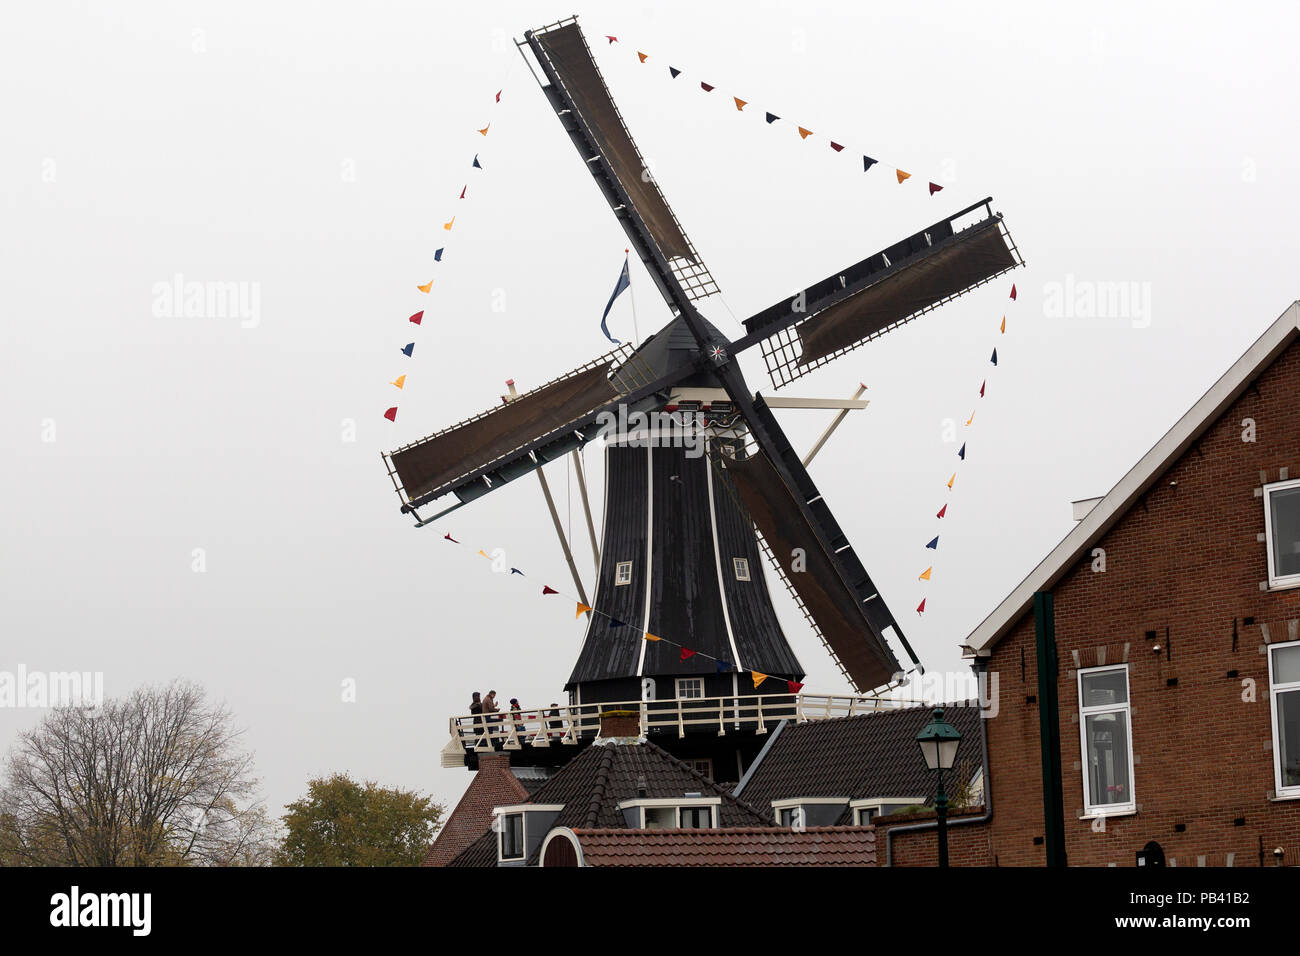 Le moulin de Adriaan (Molen de Adriaan) à Haarlem, aux Pays-Bas. Le moulin se dresse sur les rives de la rivière Spaarne et fut construit en 1778. Il i Banque D'Images